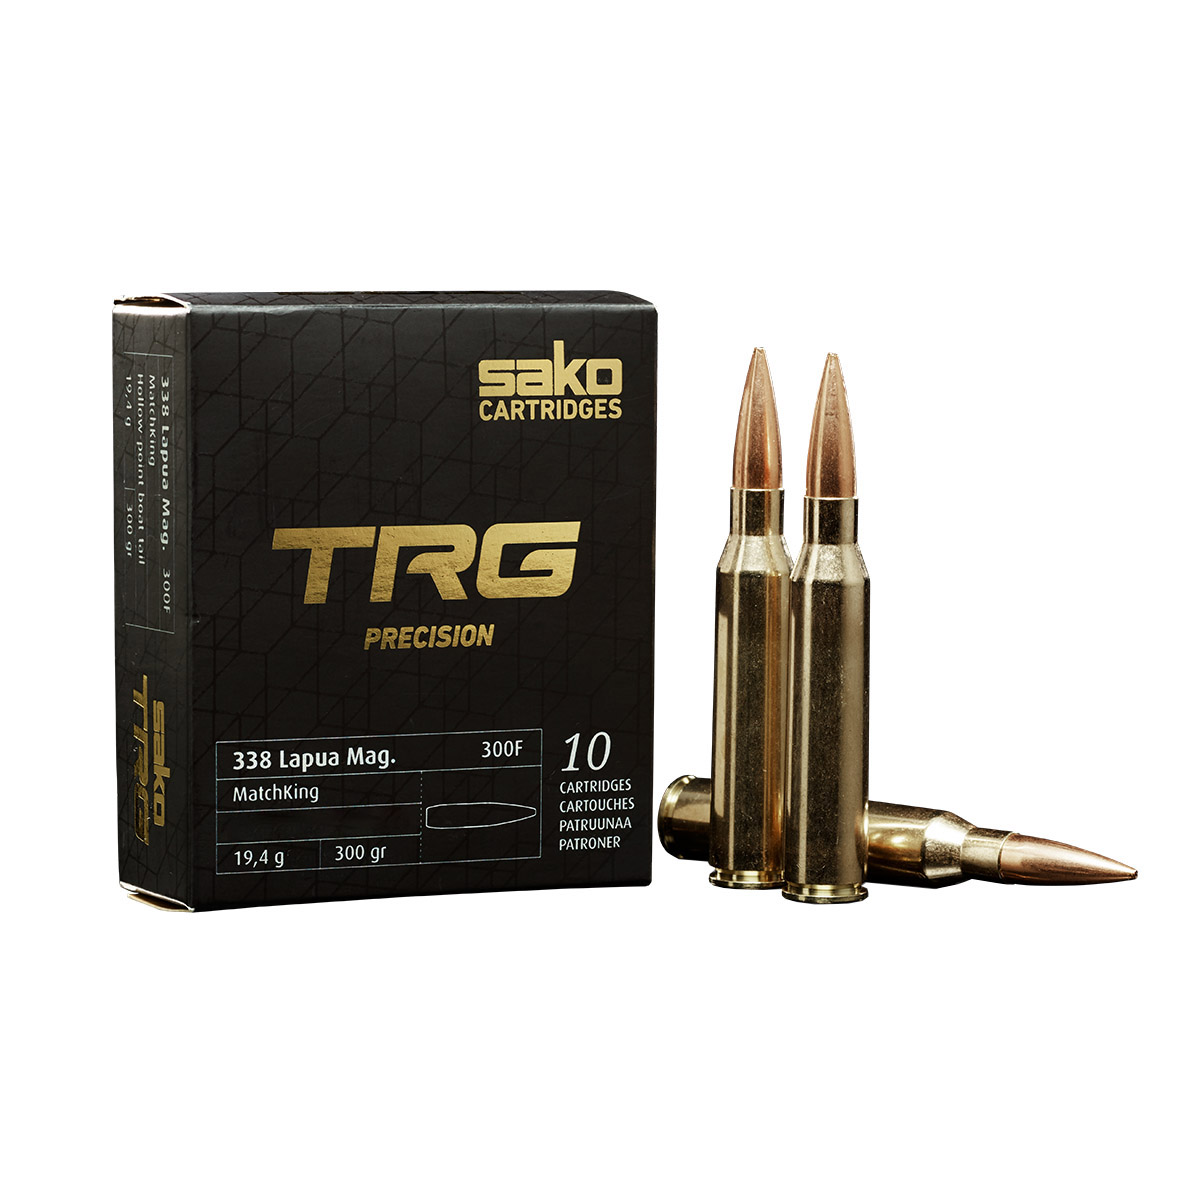 Sako Ammunition 338 Lapua Mag. TRG Precision OTM 300 Gr. – 10 Rounds